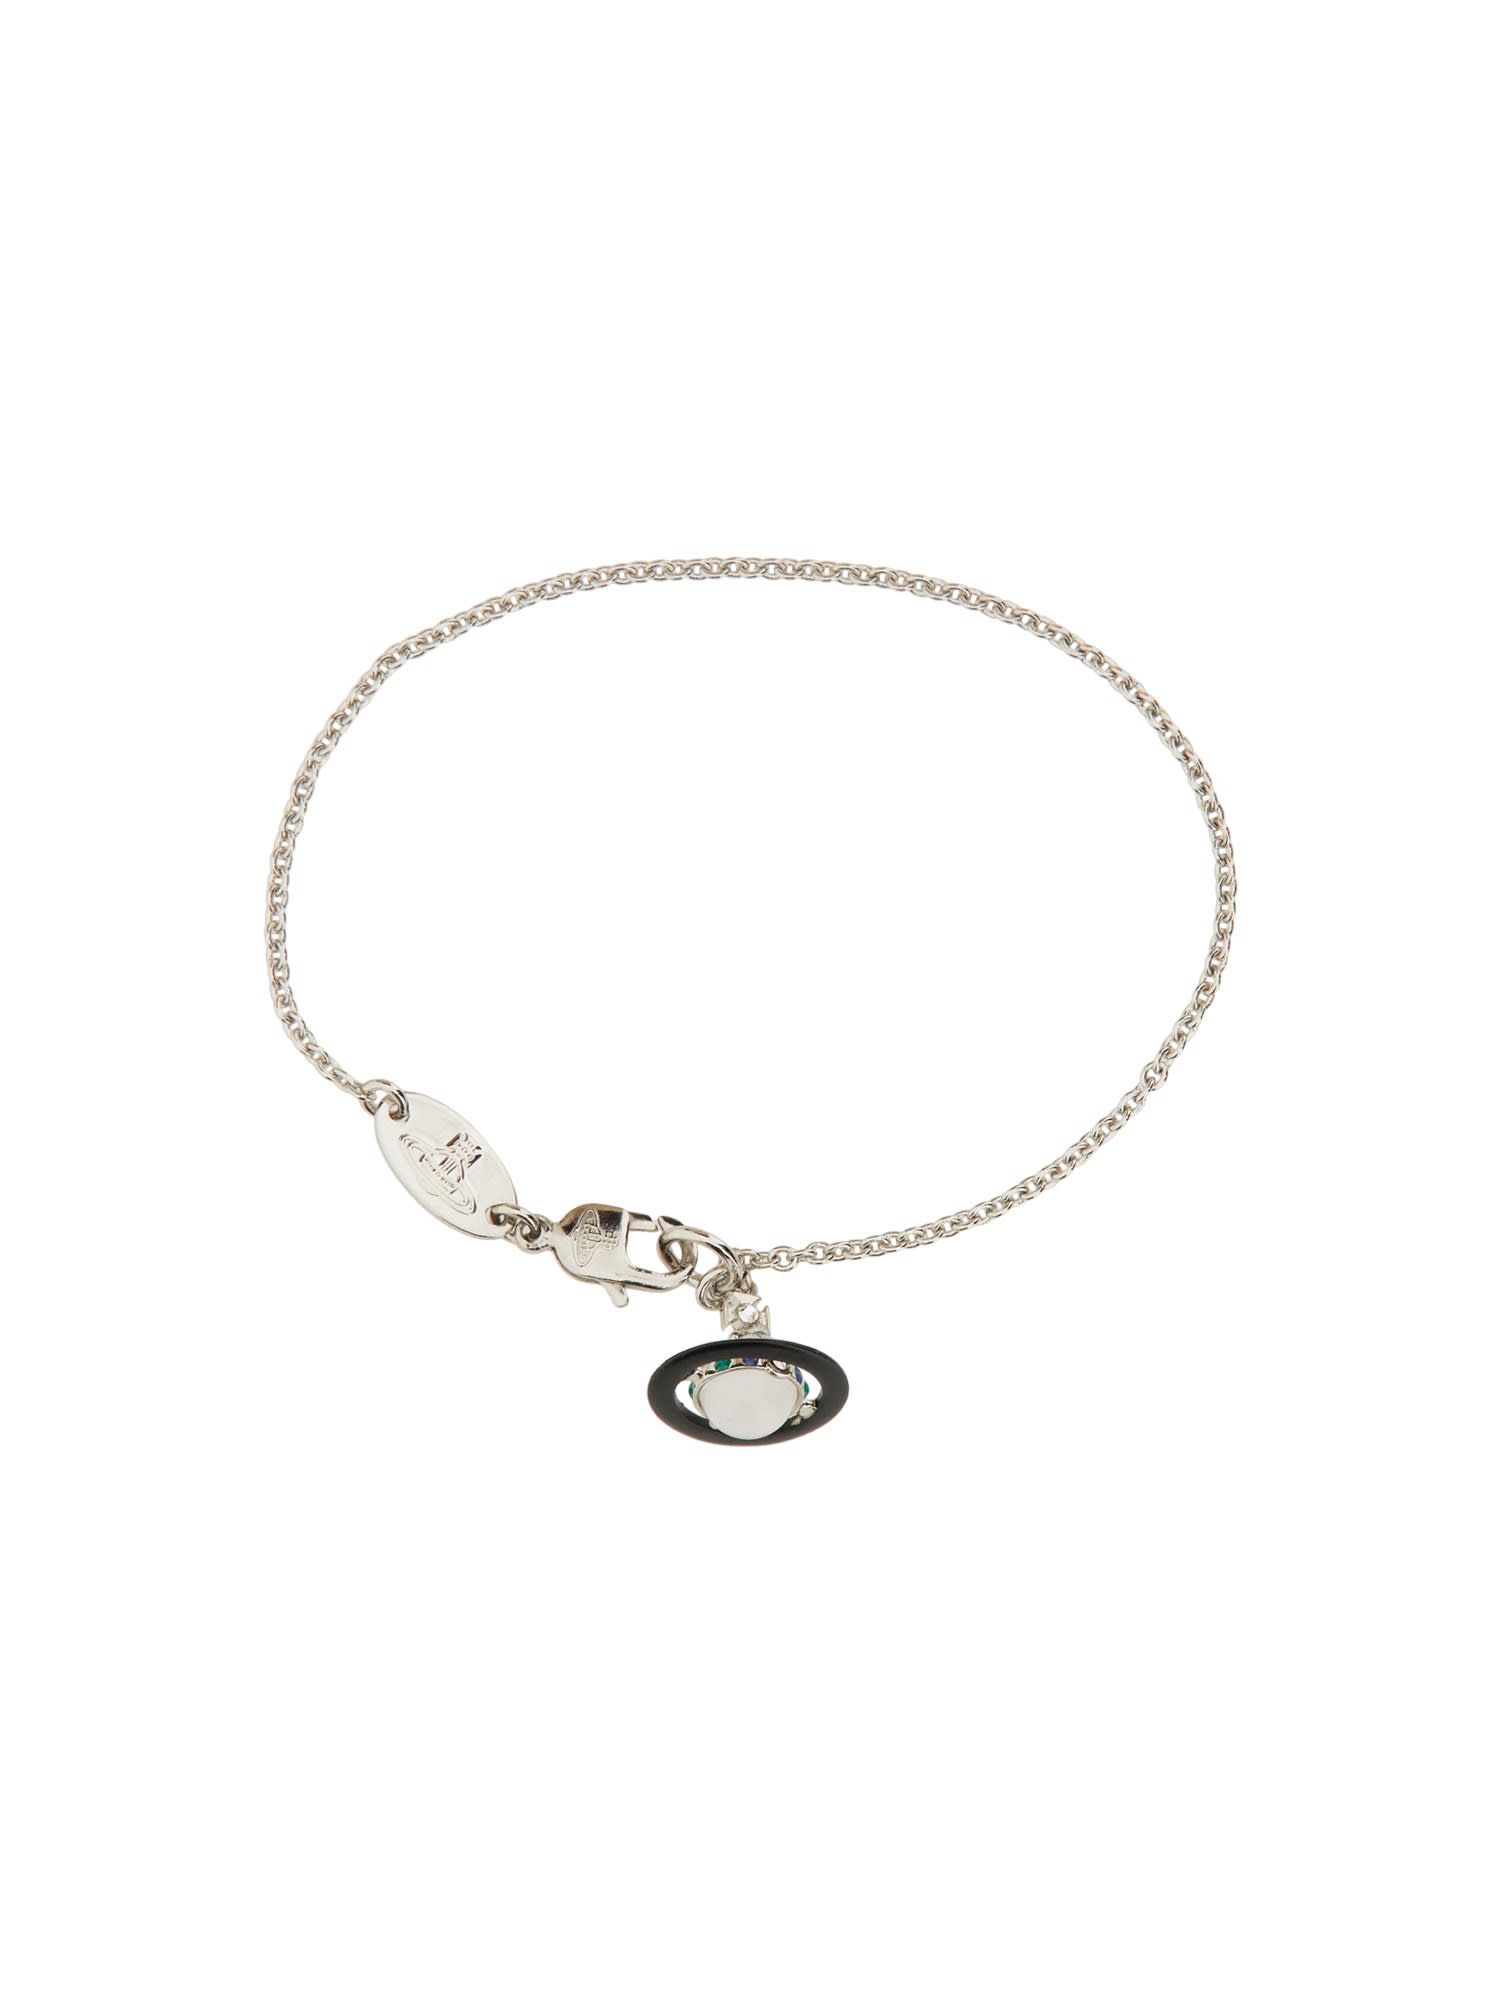 Vivienne Westwood Petite Original Orb Bracelet In Silver | ModeSens